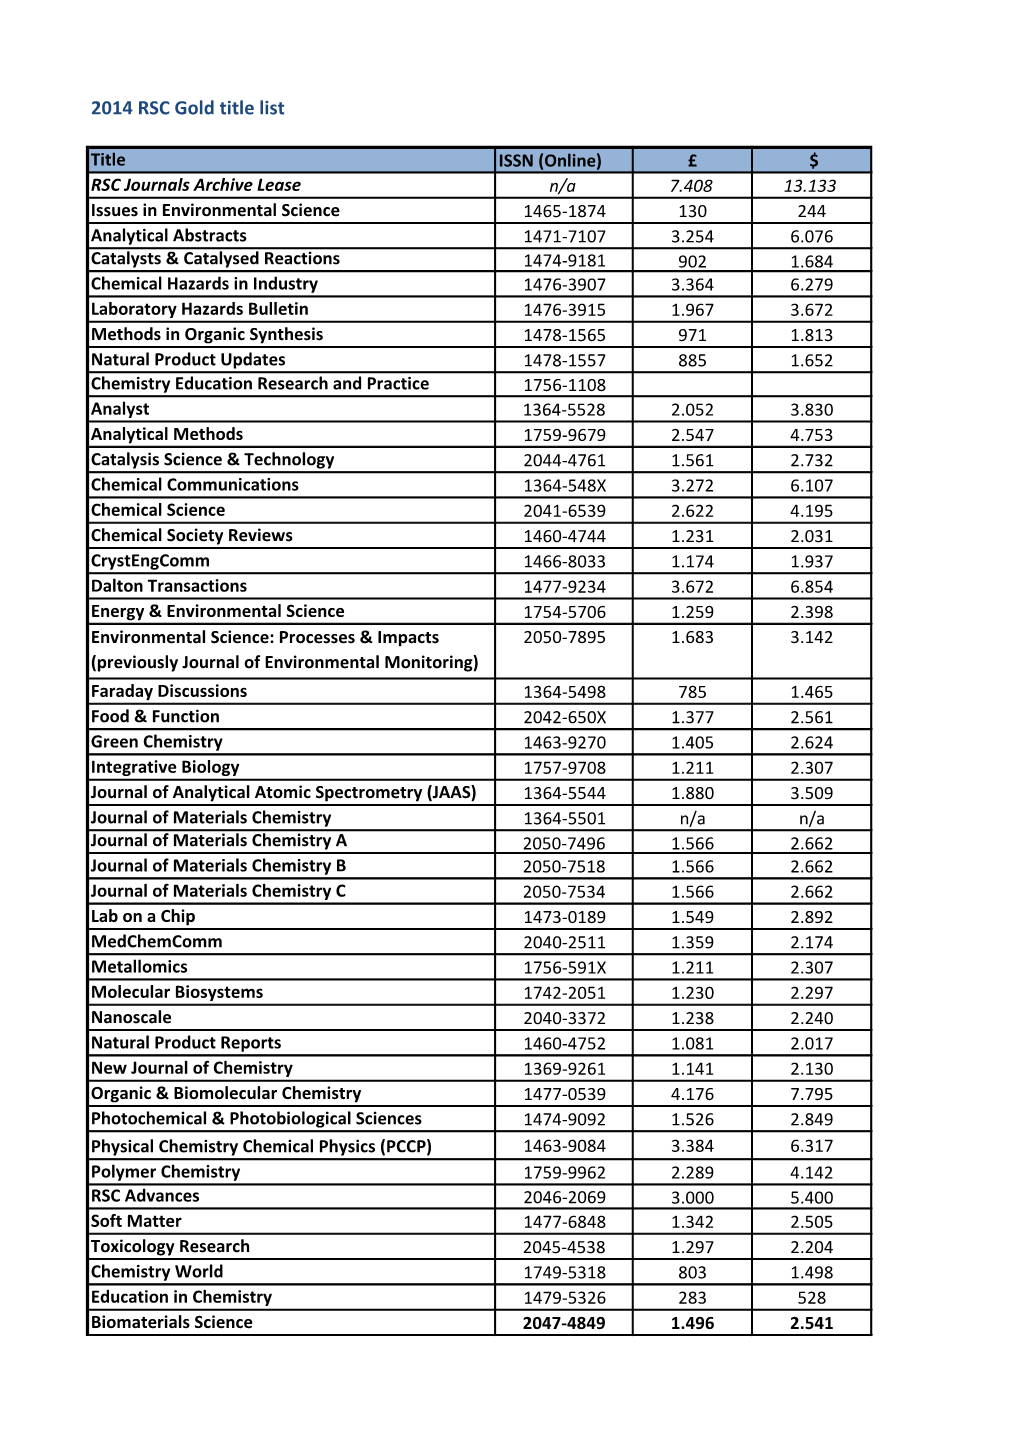 2014 RSC Gold Title List